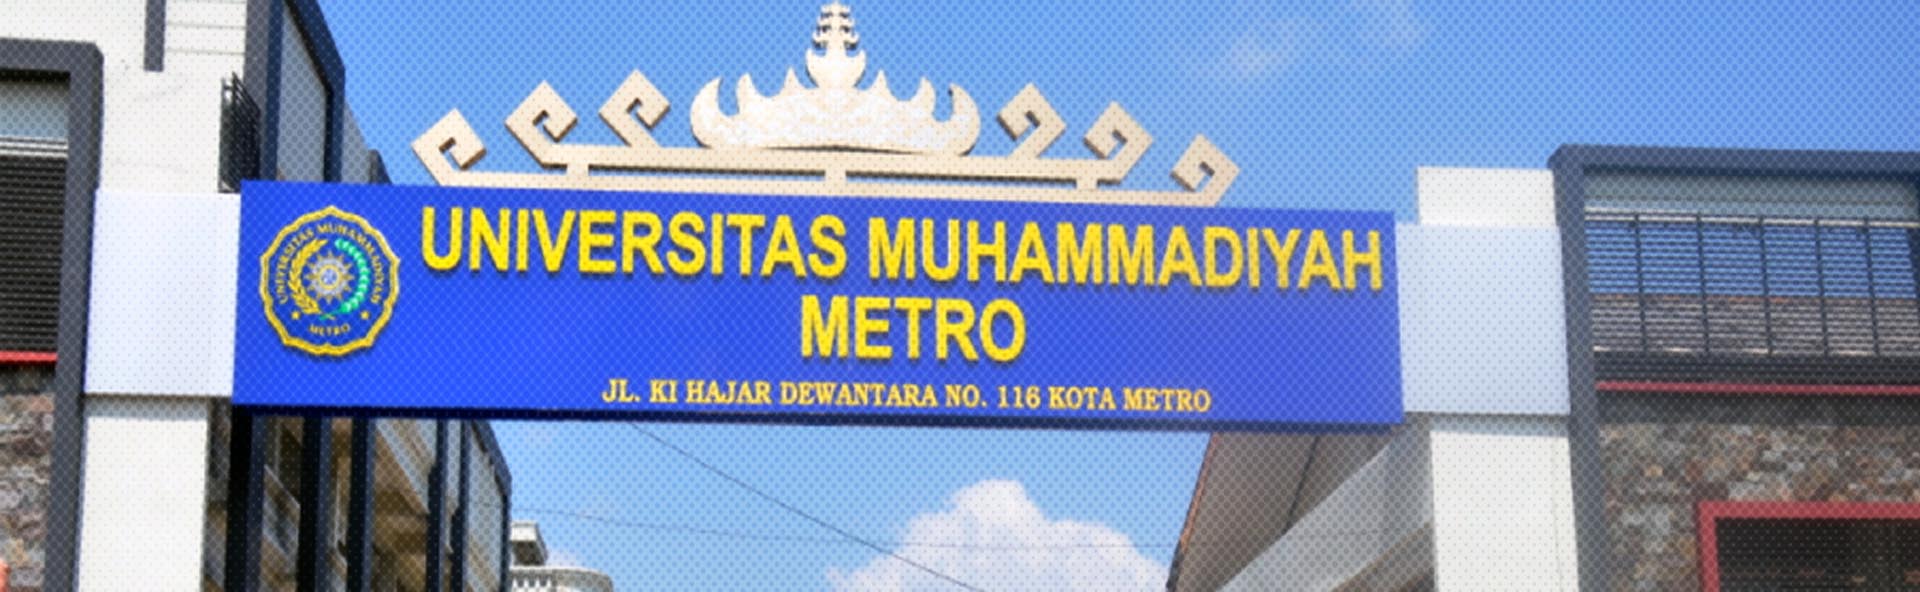 Universitas Muhammadiyah Metro